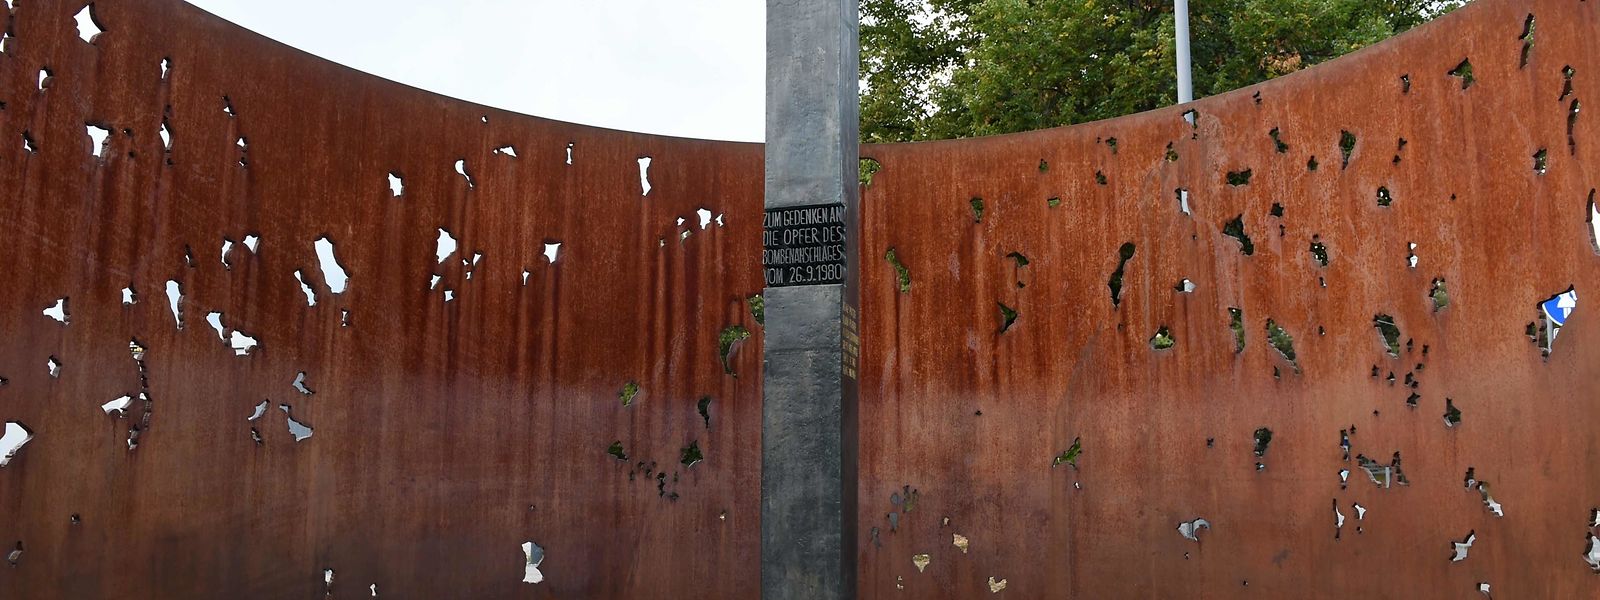 Auf der Münchner Theresienwiese erinnert eine Gedenktafel an die Opfer des Anschlags von 1980.